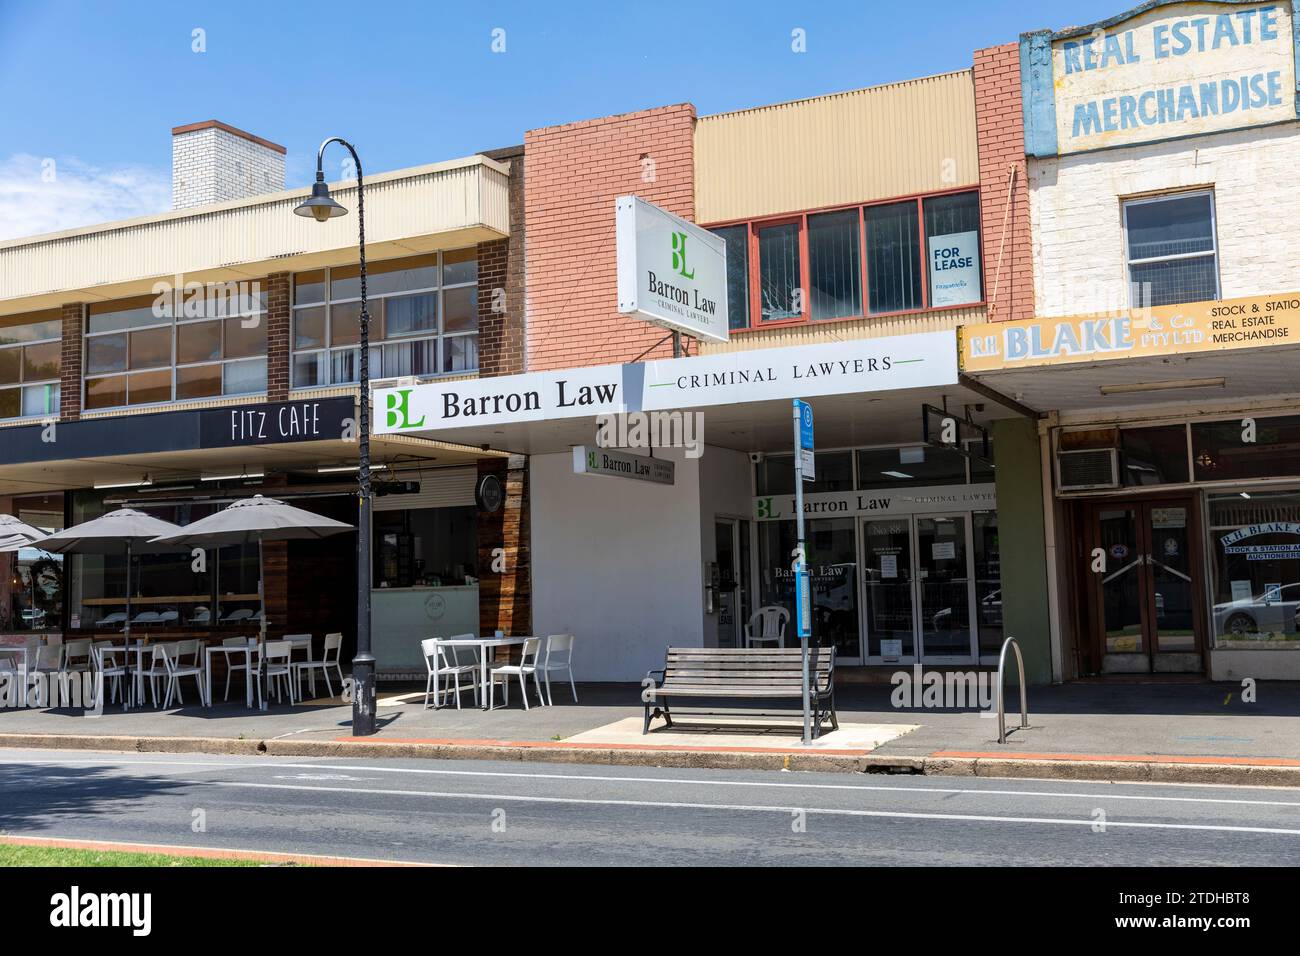 Wagga Wagga ville en Australie, rue principale avec café et bureaux d'avocats criminels, NSW, Australie Banque D'Images